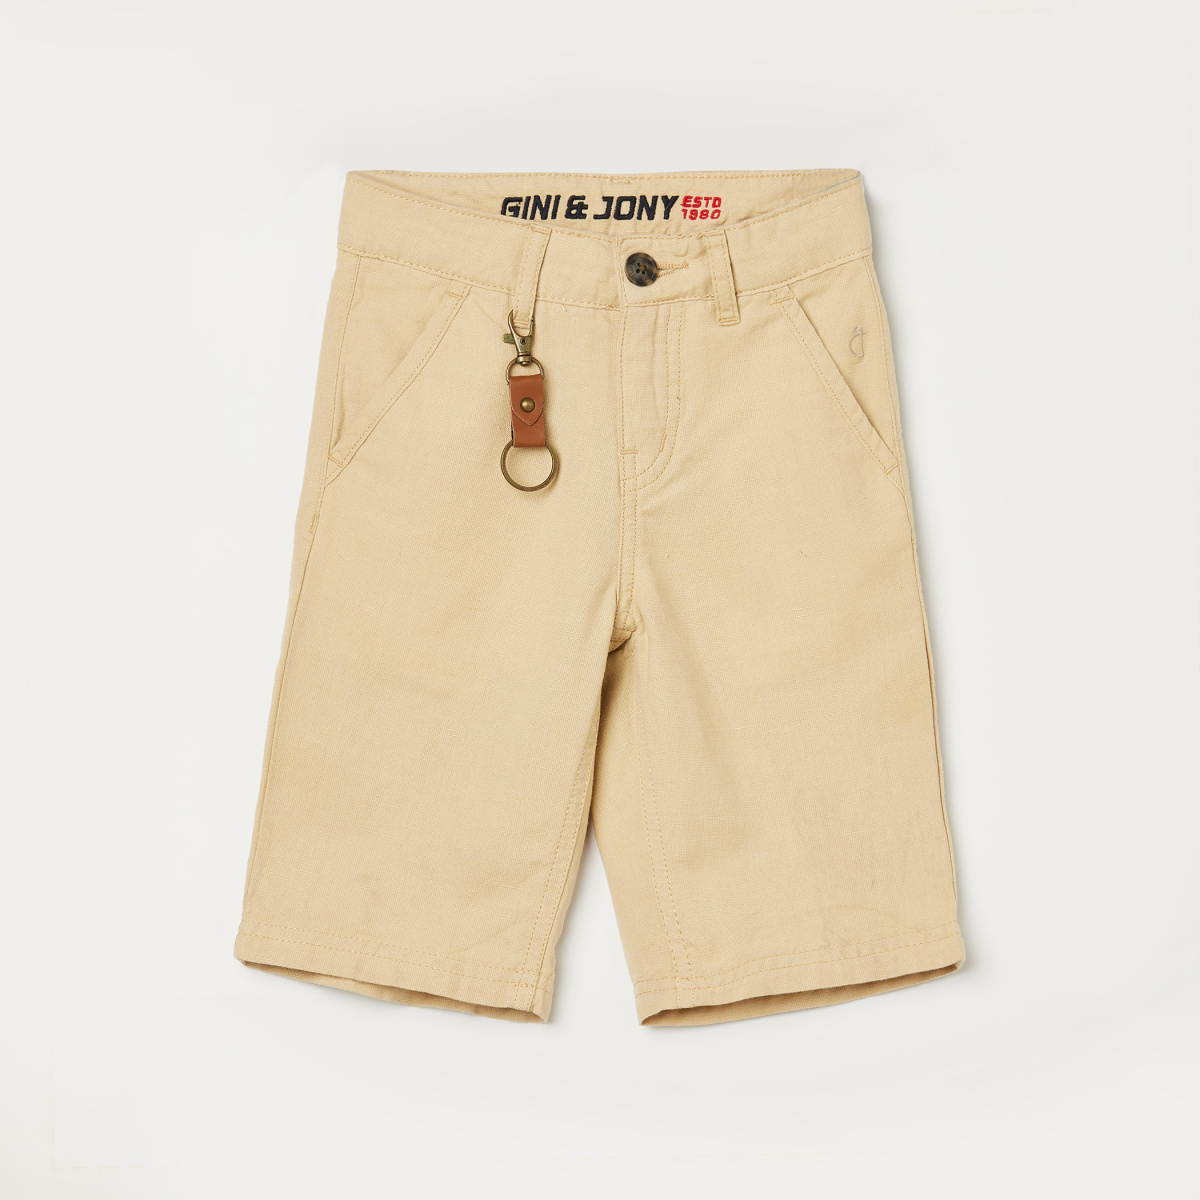 GINY & JONY Boys Solid Woven Shorts